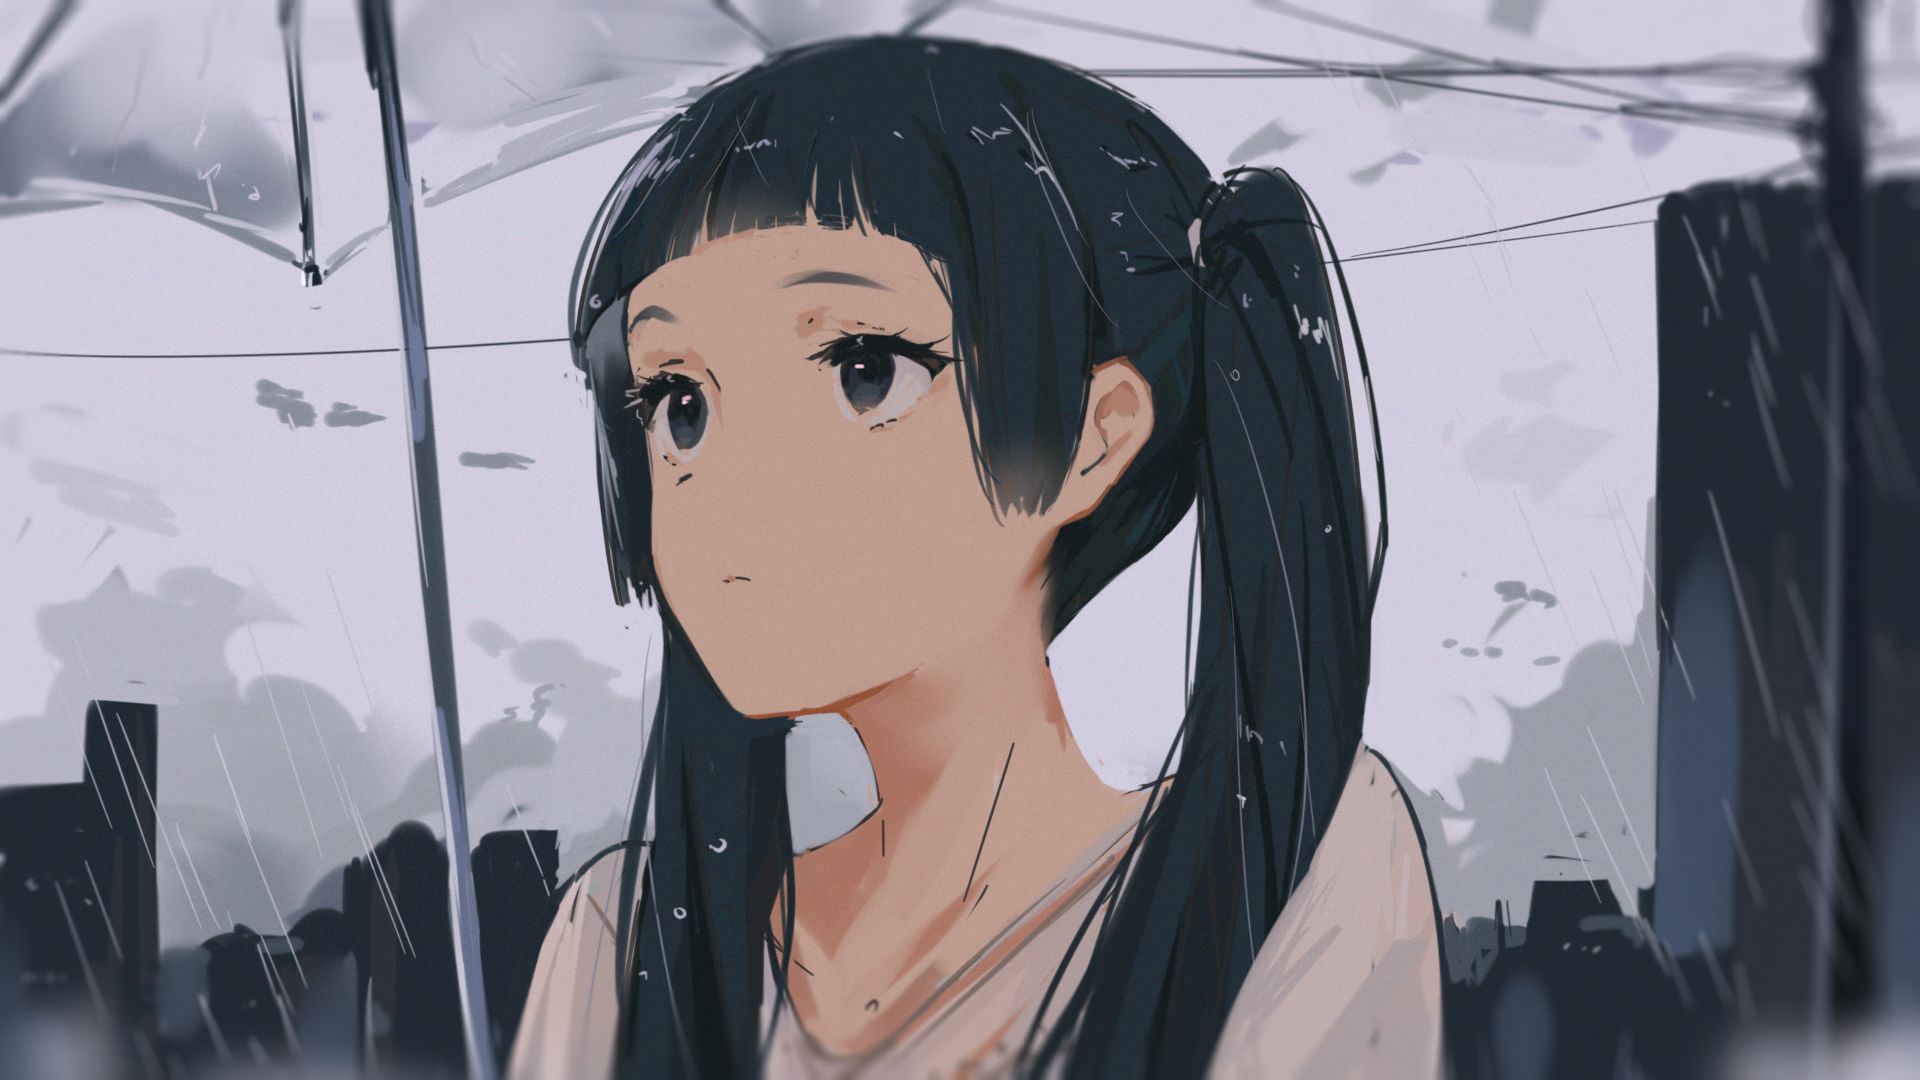 Download mobile wallpaper Anime, Rain, Girl, Black Hair for free.